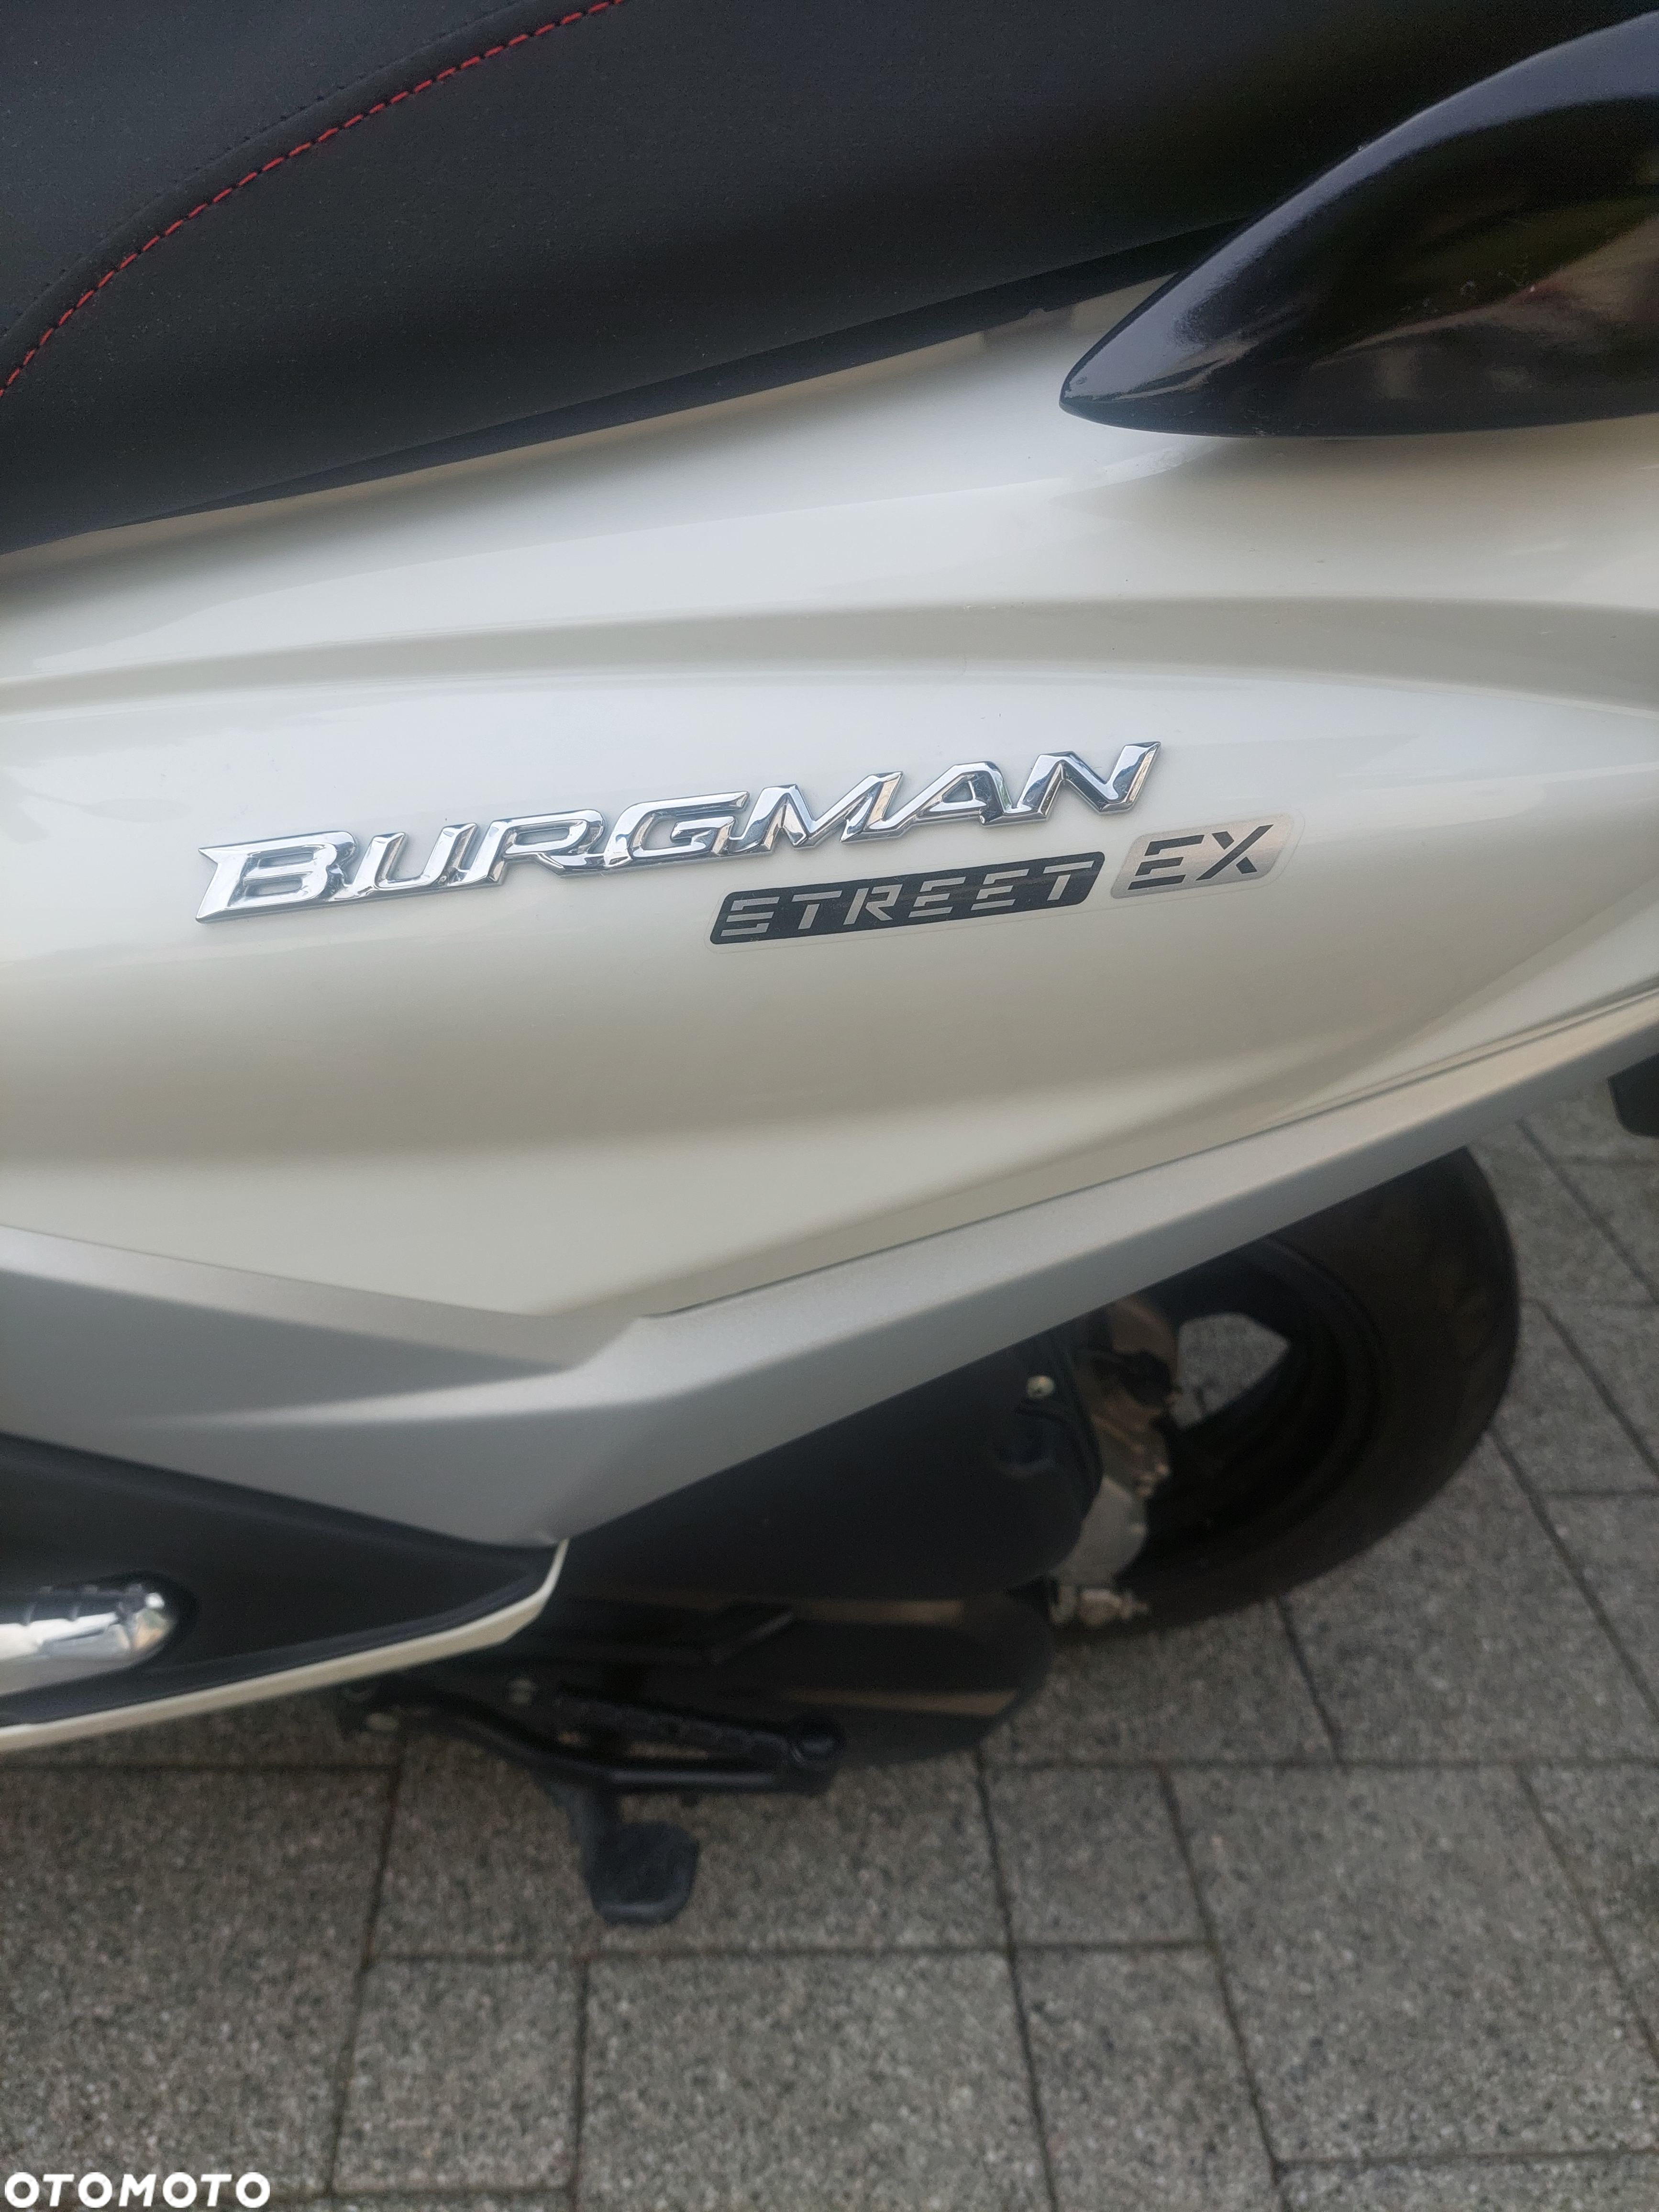 Suzuki Burgman - 8